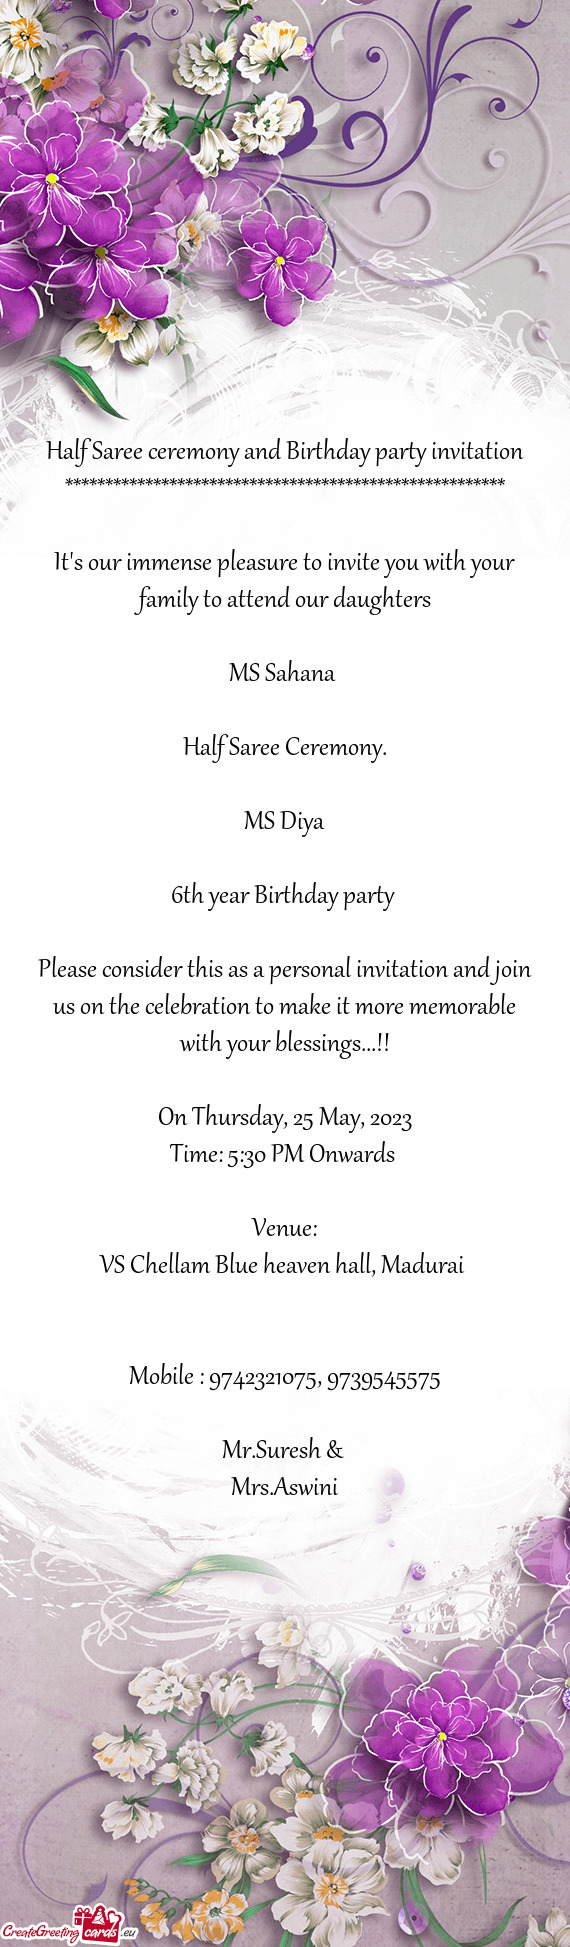 Half Saree ceremony and Birthday party invitation